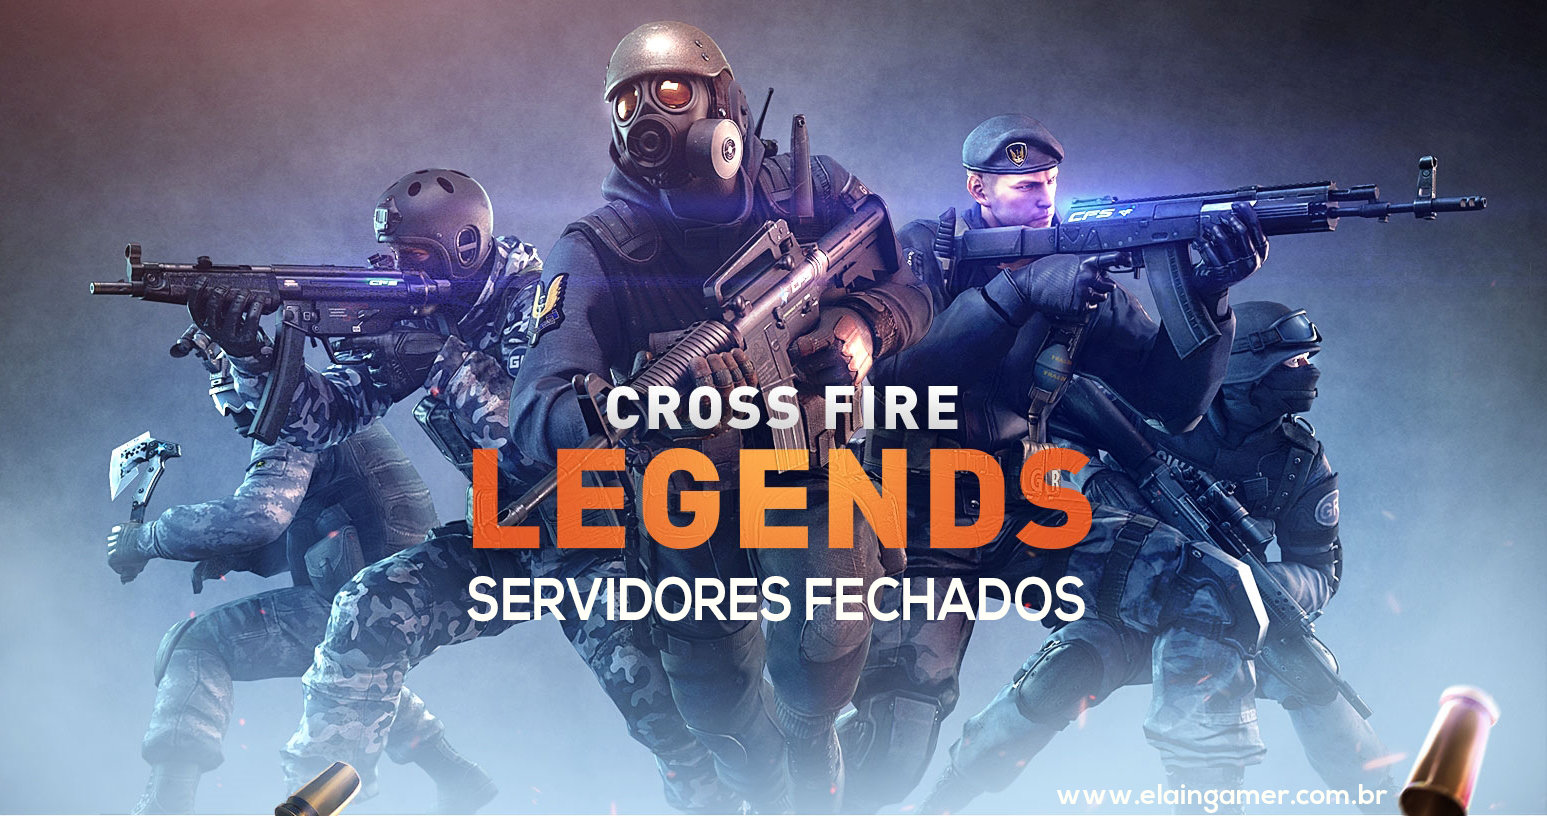 CrossFire: Legends tem servidores fechados oficialmente